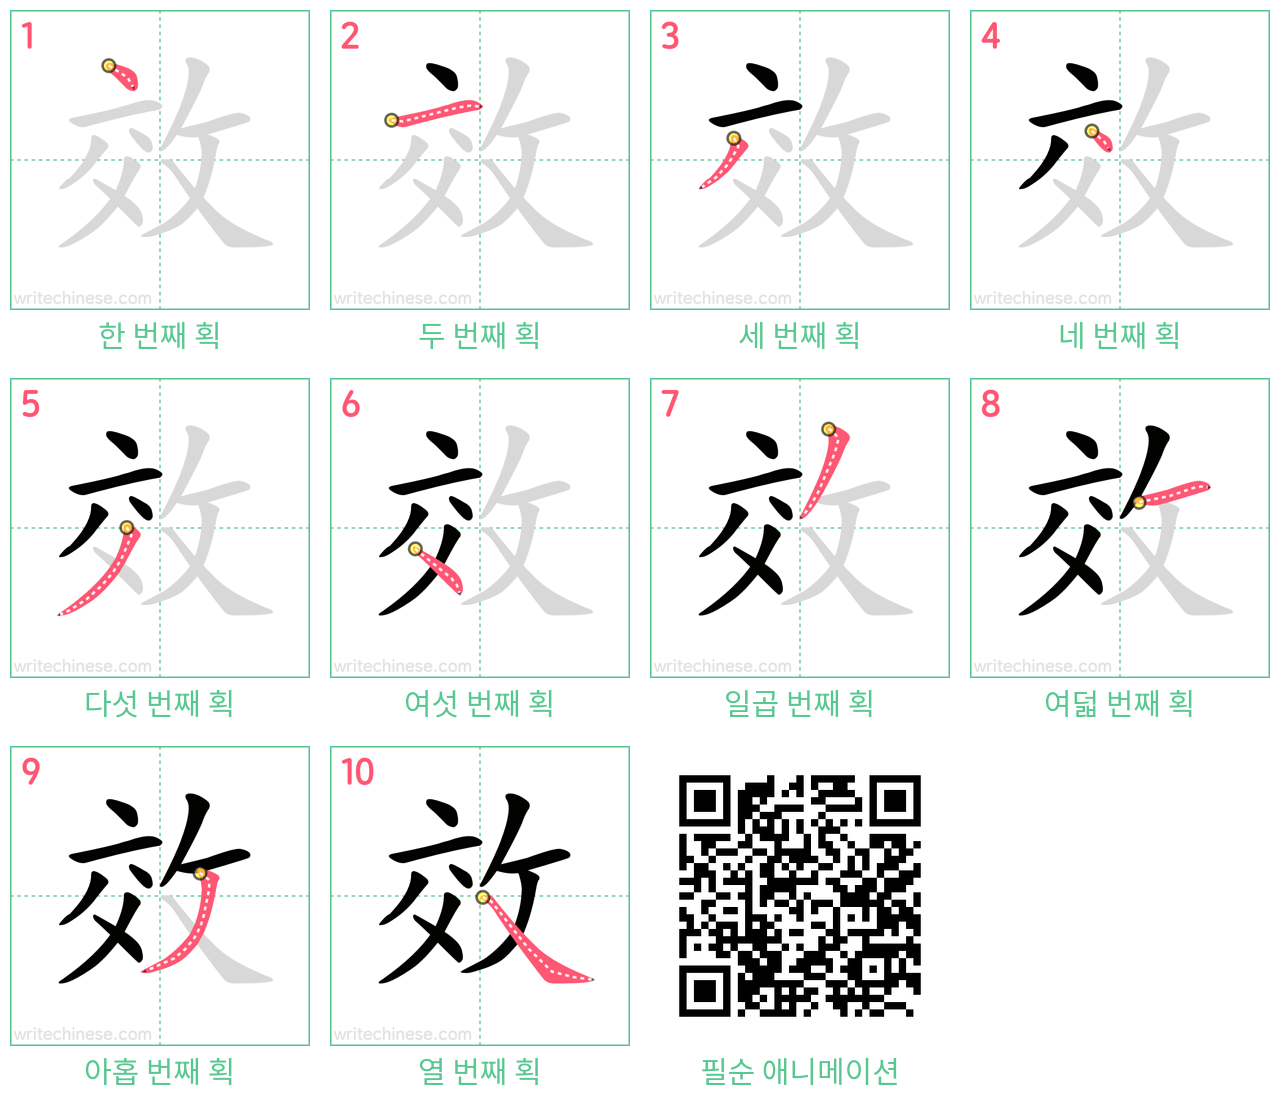 效 step-by-step stroke order diagrams